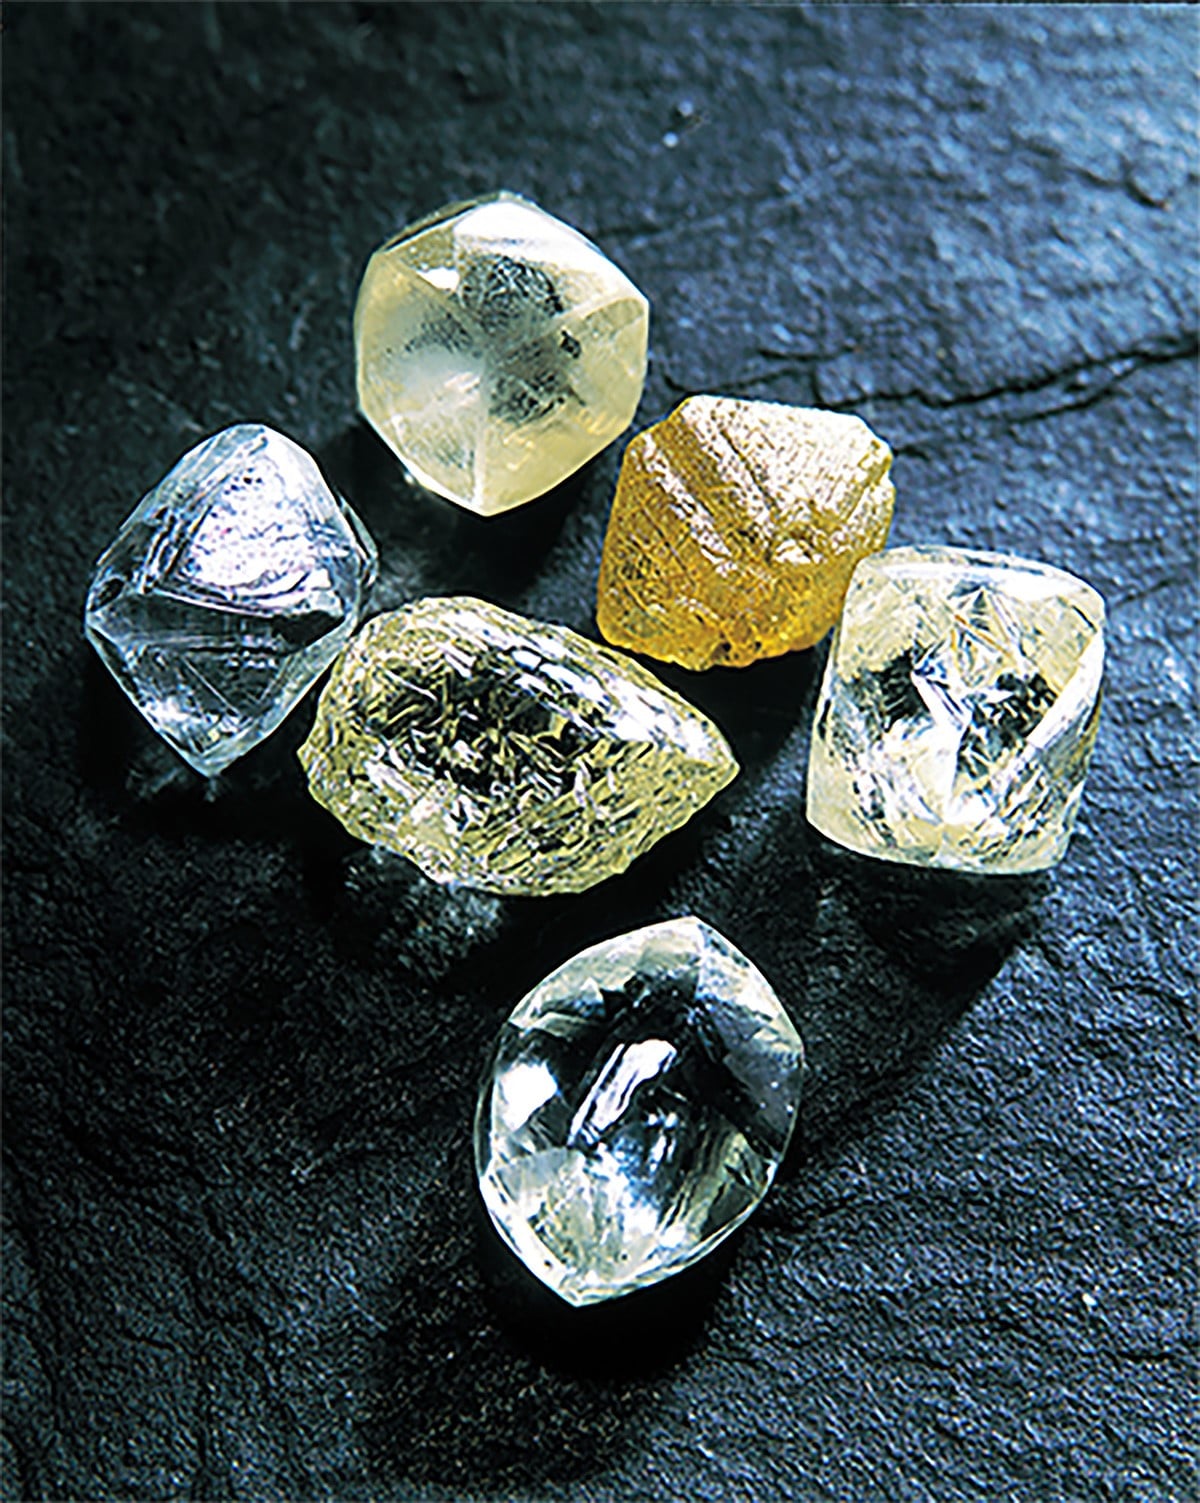 平時難得一見的原鑽。即使未經切割、研磨，鑽石原石的光輝依然美麗動人。